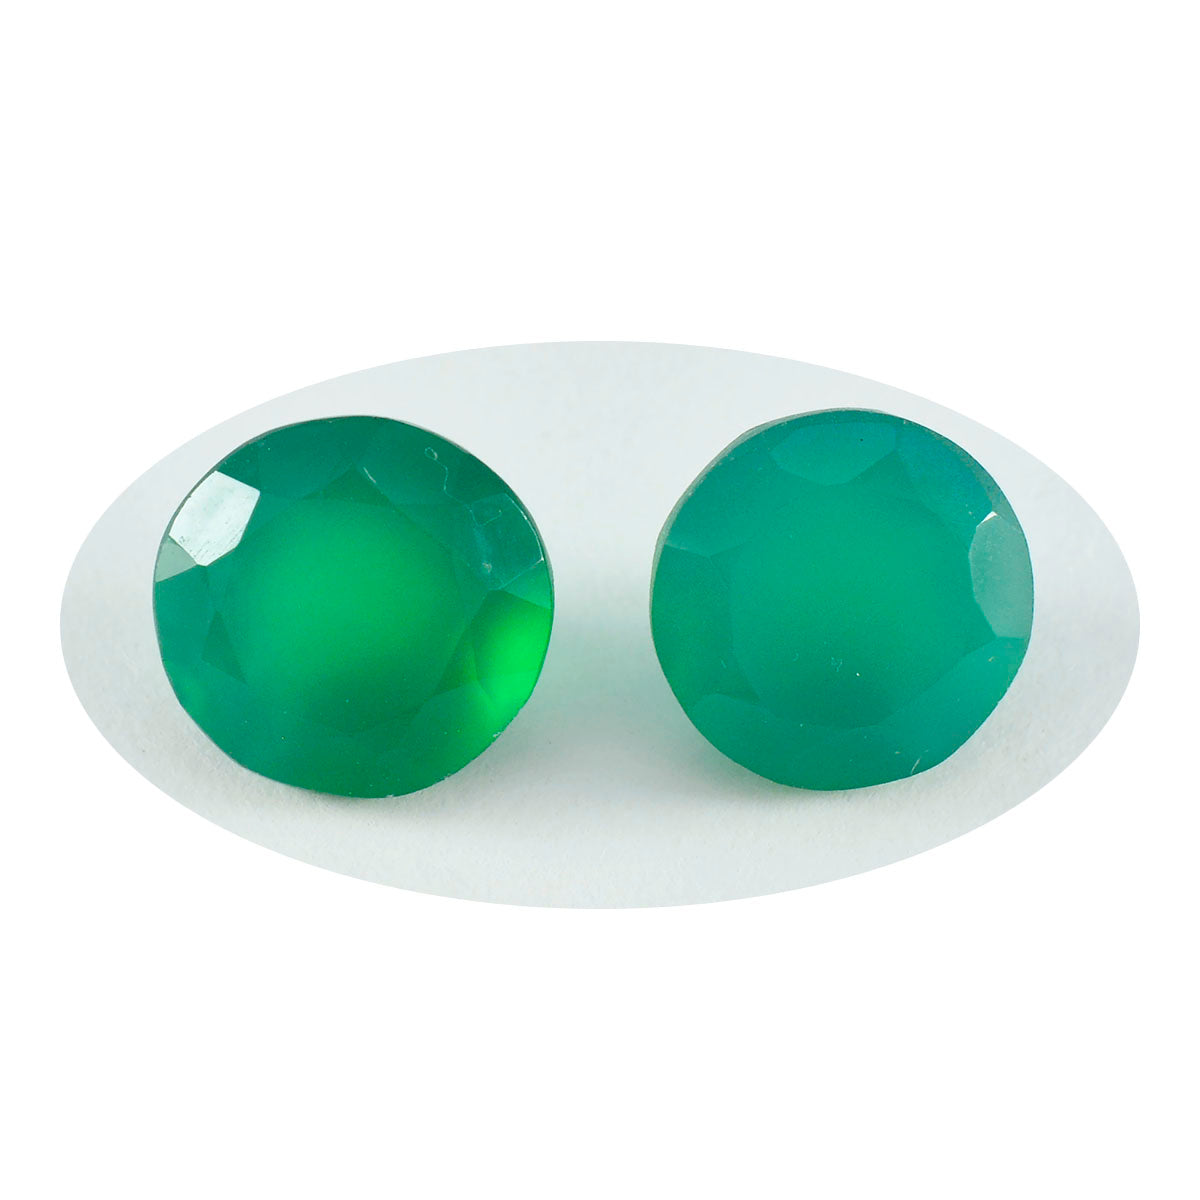 riyogems 1pc 本物のグリーン オニキス ファセット 10x10 mm ラウンド形状のかなり品質のルース宝石